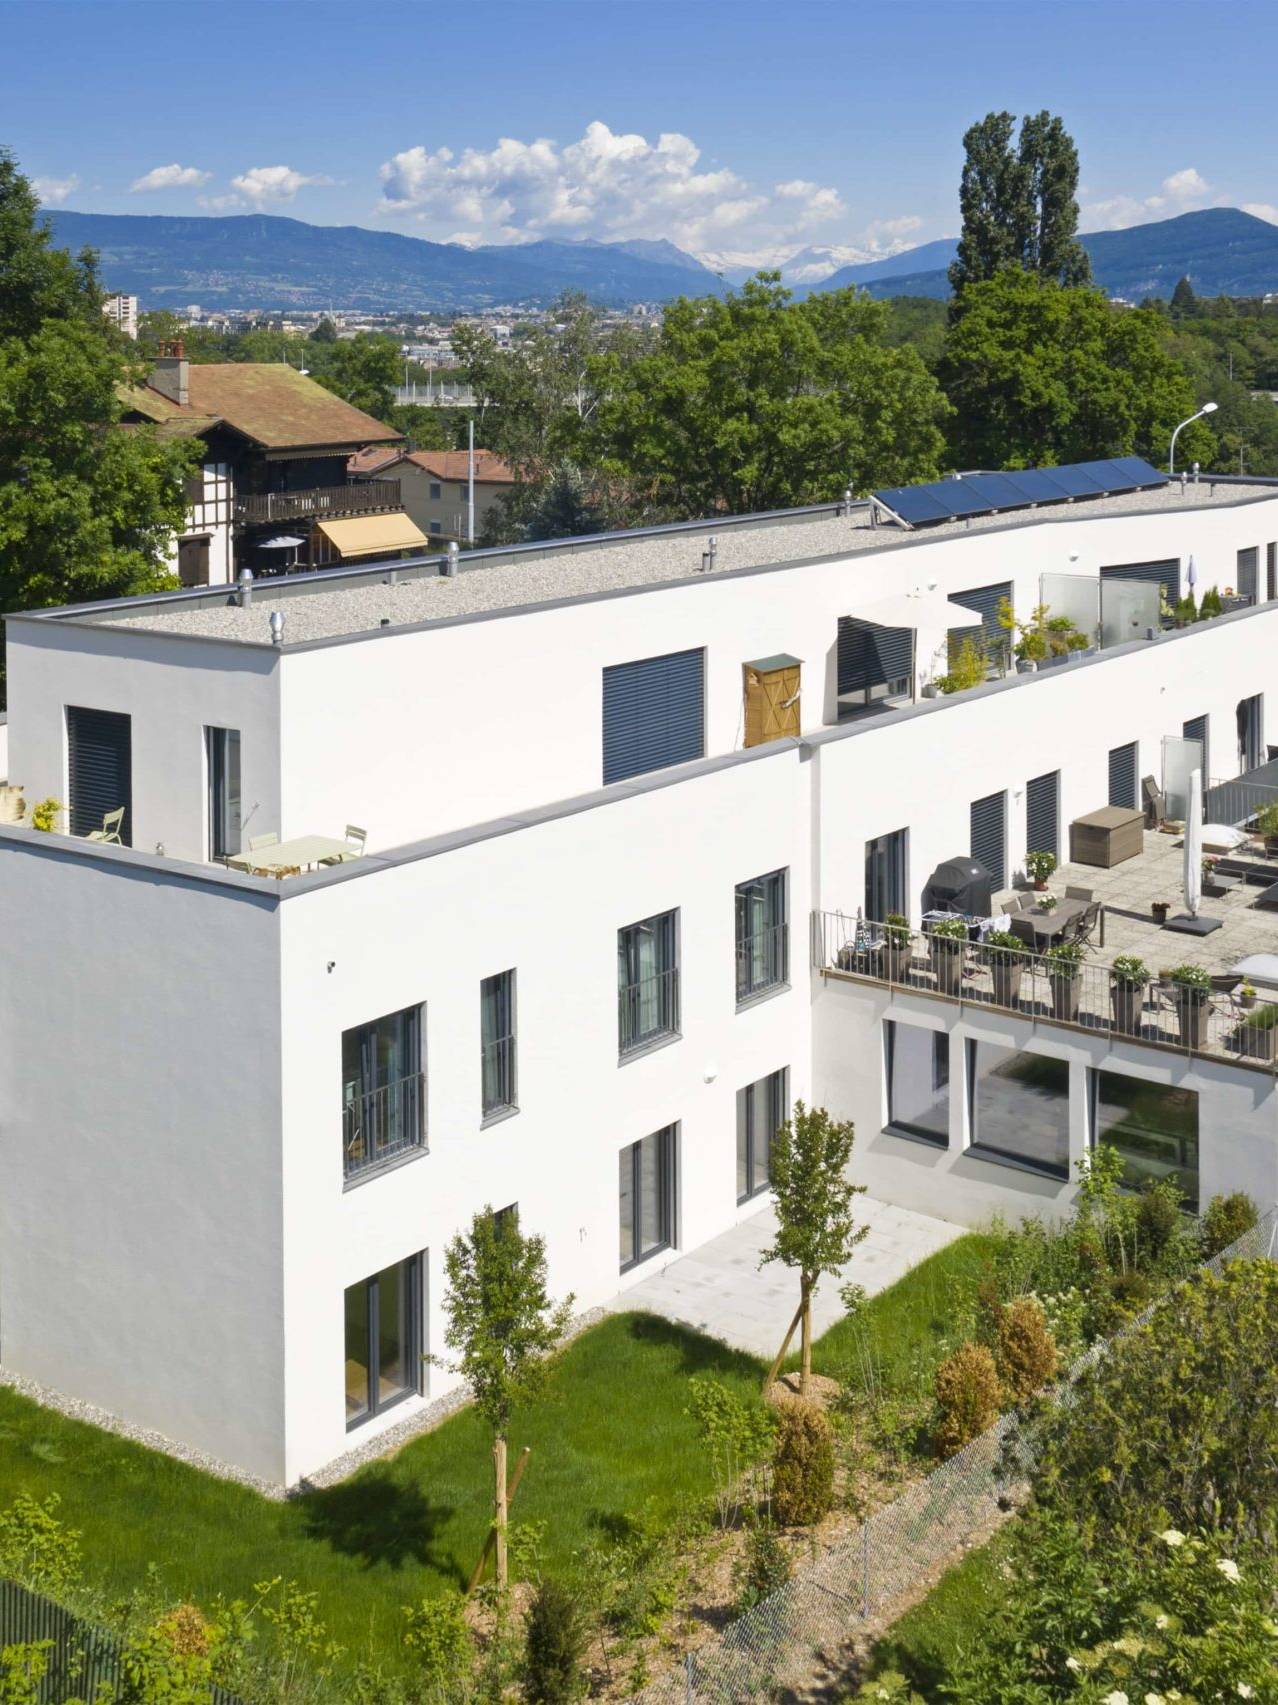 Construction de 3 villas jumelles à l’architecture moderne avec de belles terrasses